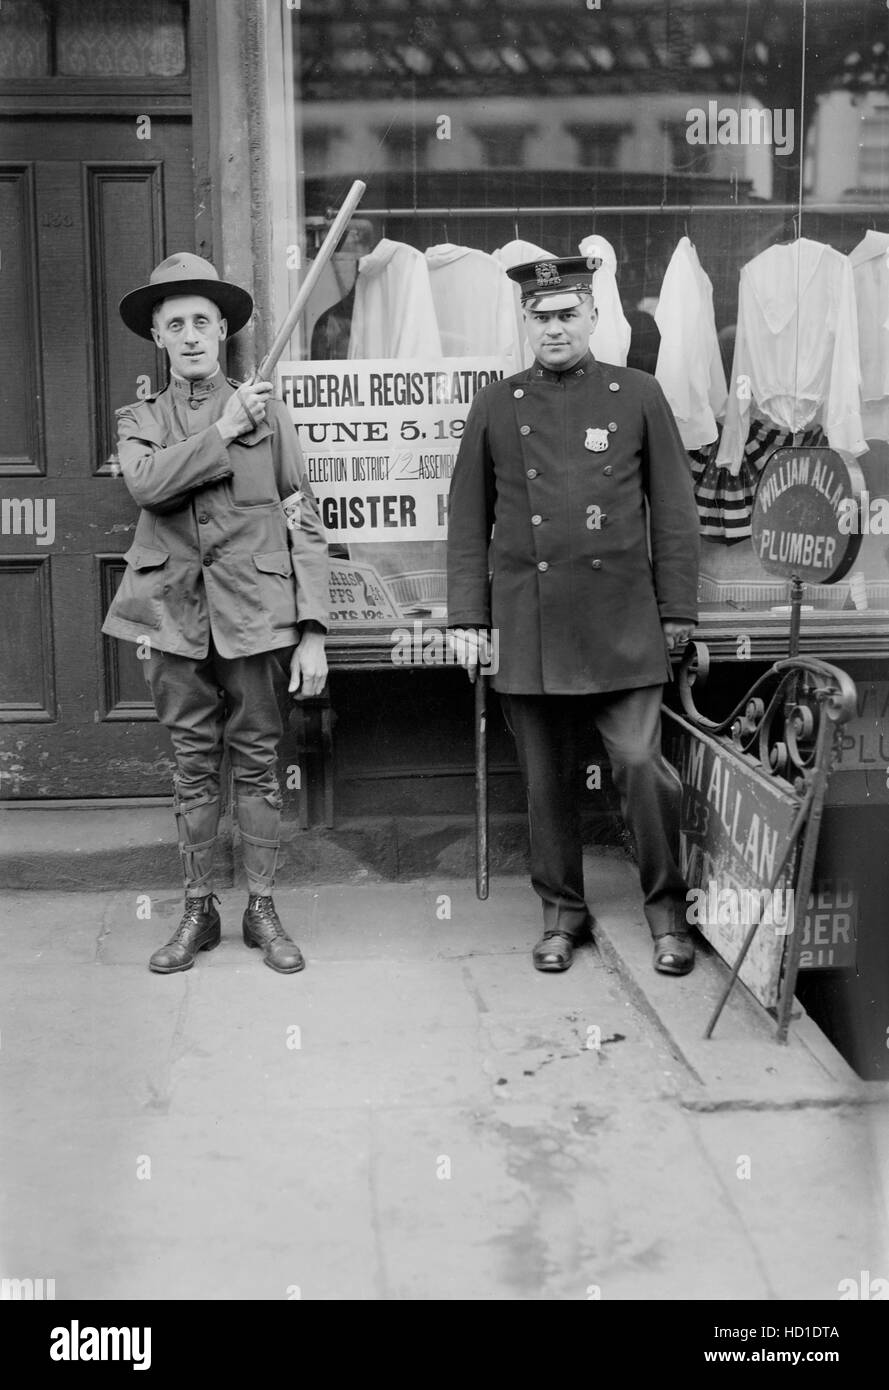 Polizist und Wache am Entwurf Einwohnermeldeamt im ersten Weltkrieg, New York City, New York, USA, Bain Nachrichtendienst, Juni 1917 Stockfoto